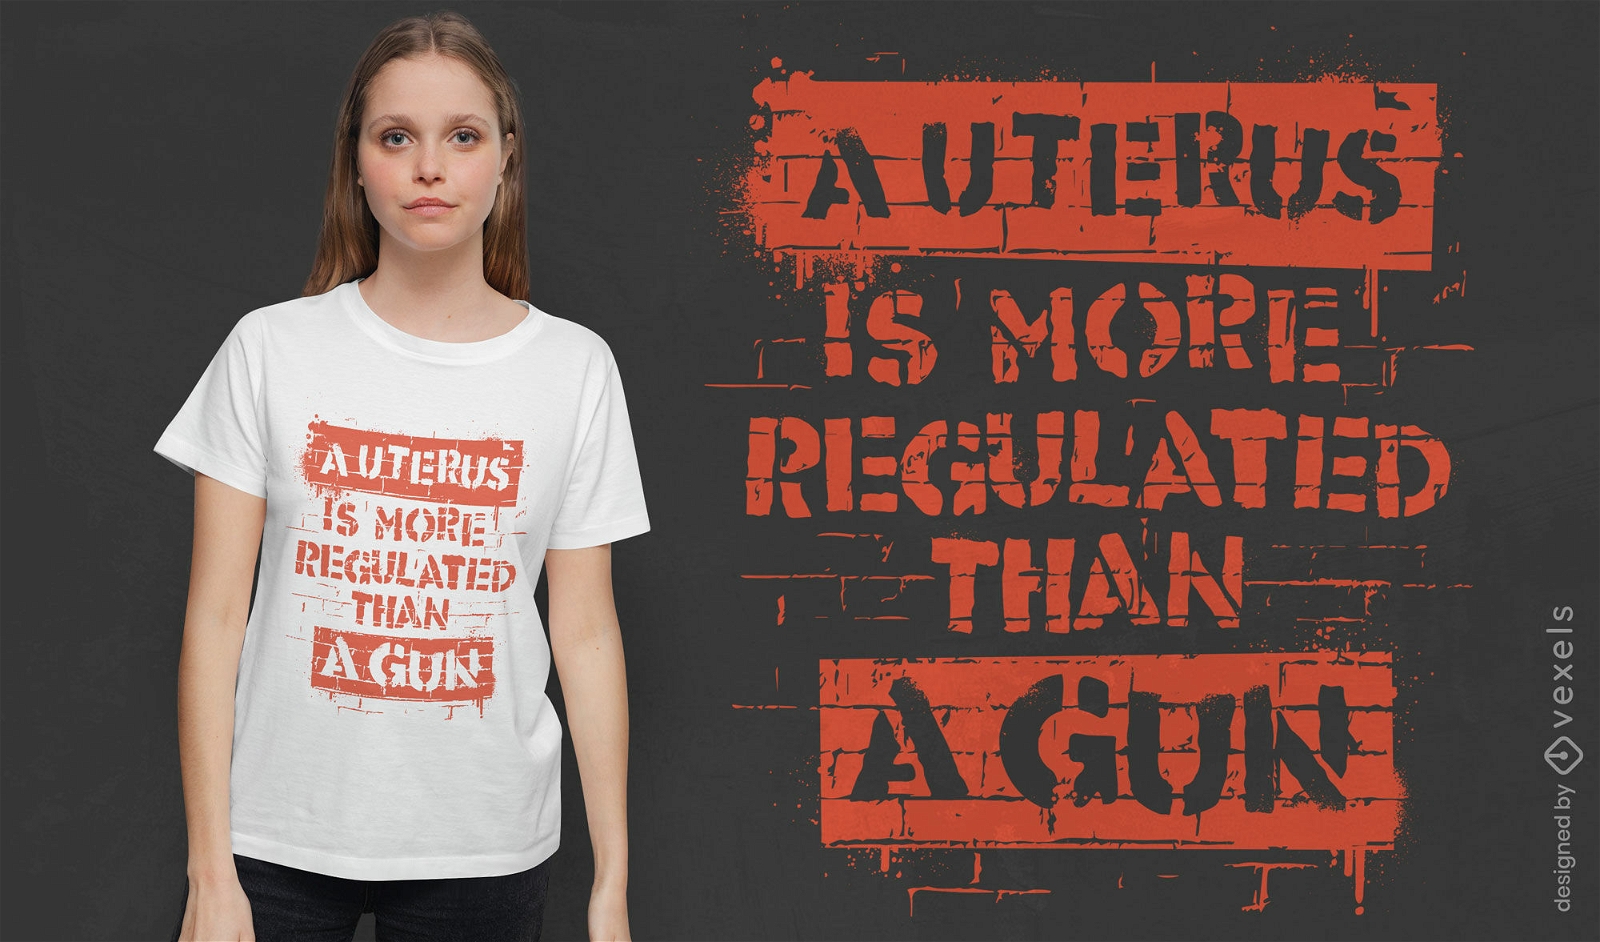 Uterus anti regulation quote t-shirt design